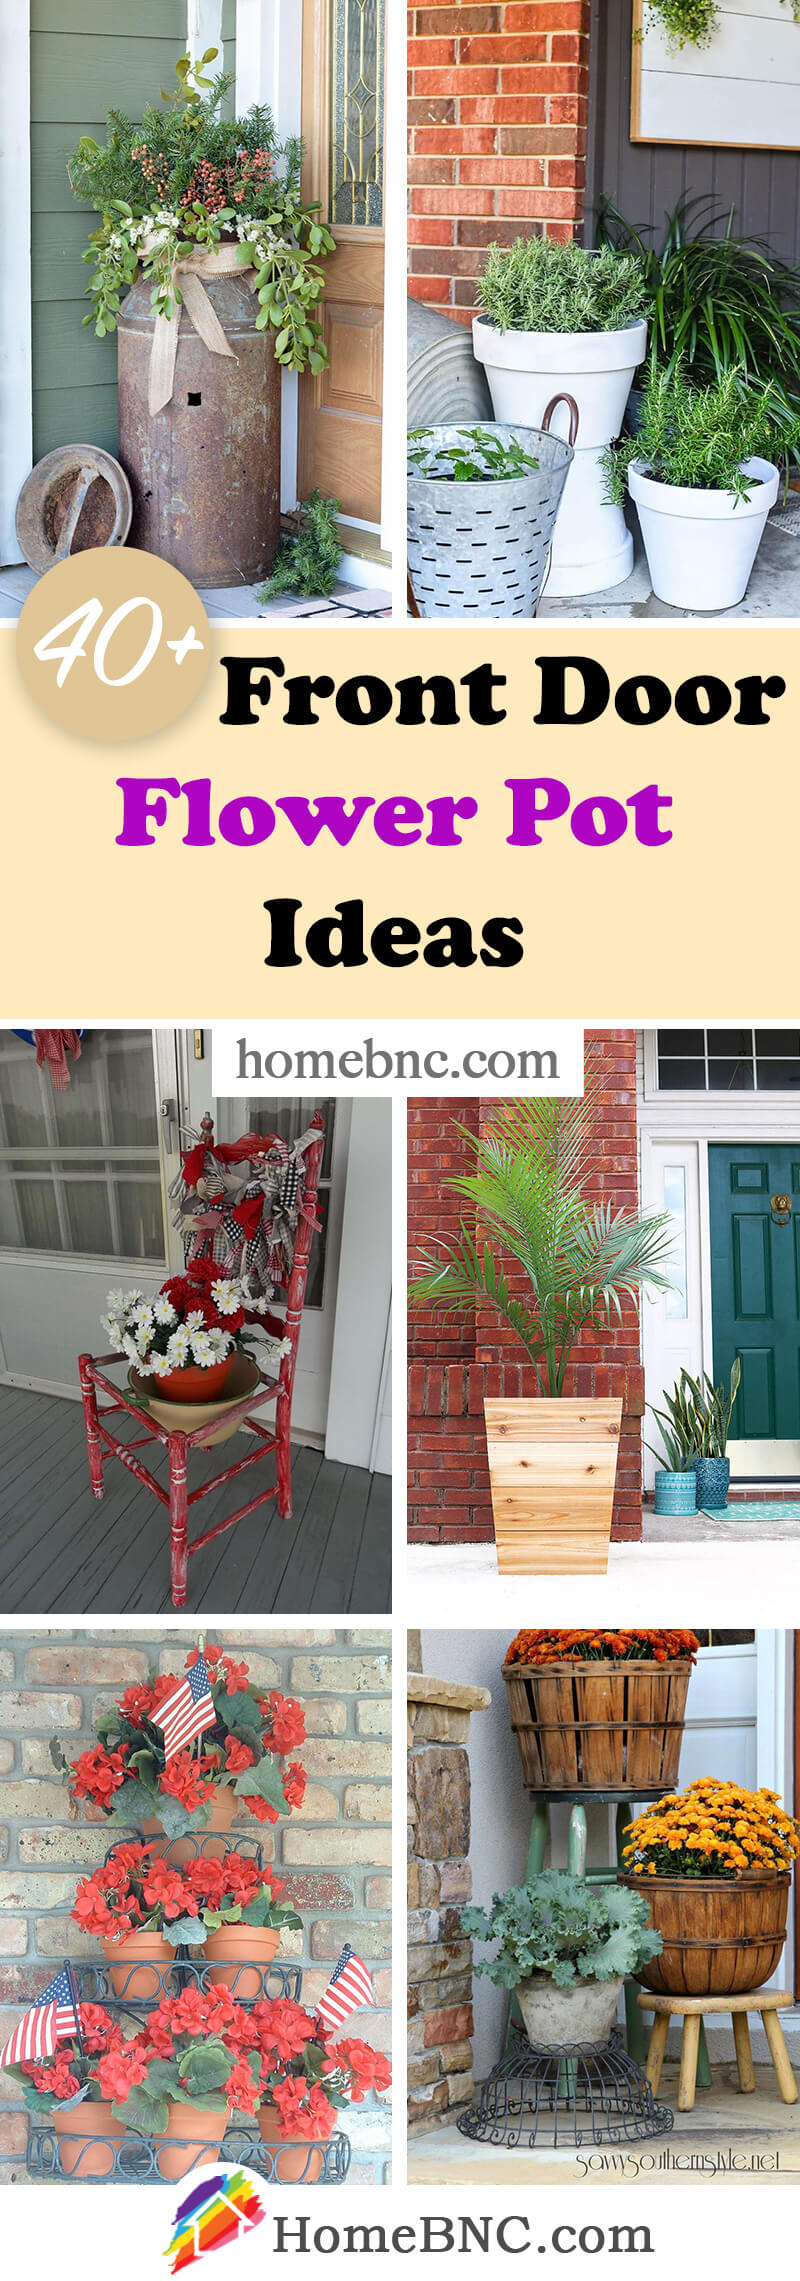 40+ Best Front Door Flower Pots (Ideas and Designs) for 2021